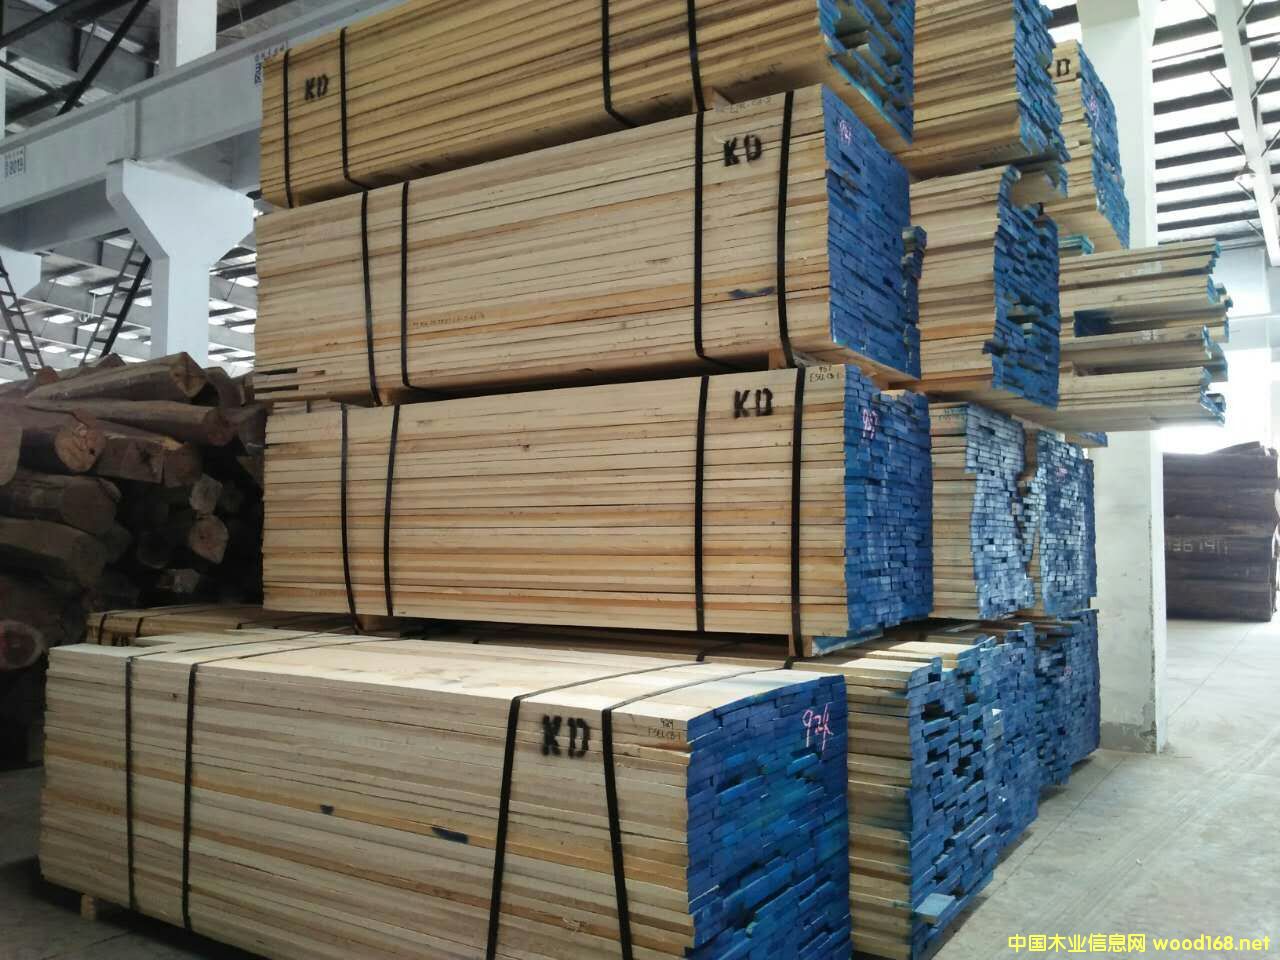 [供] 美国白蜡木板材-中国木业信息网供应大市场